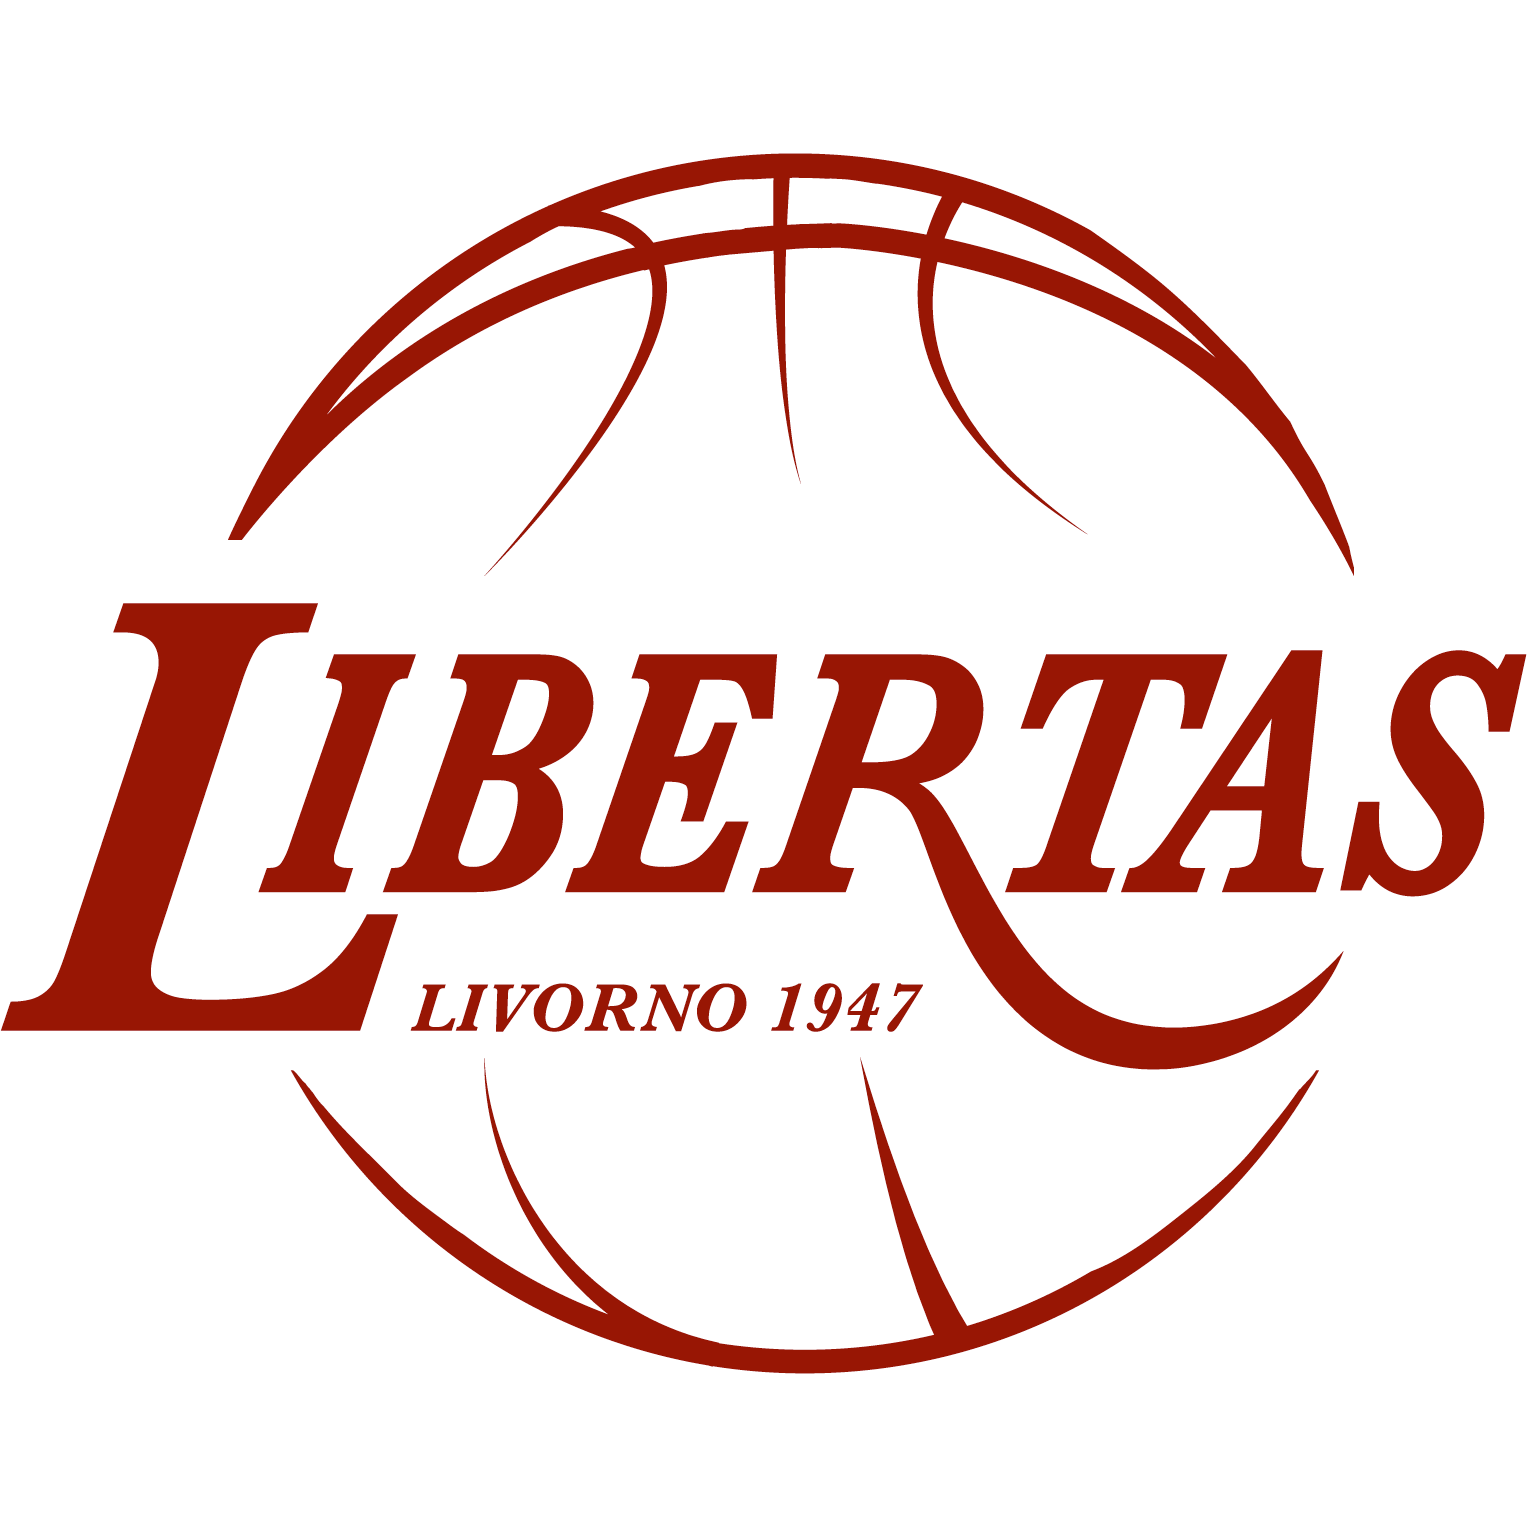 Libertas Livorno 1947